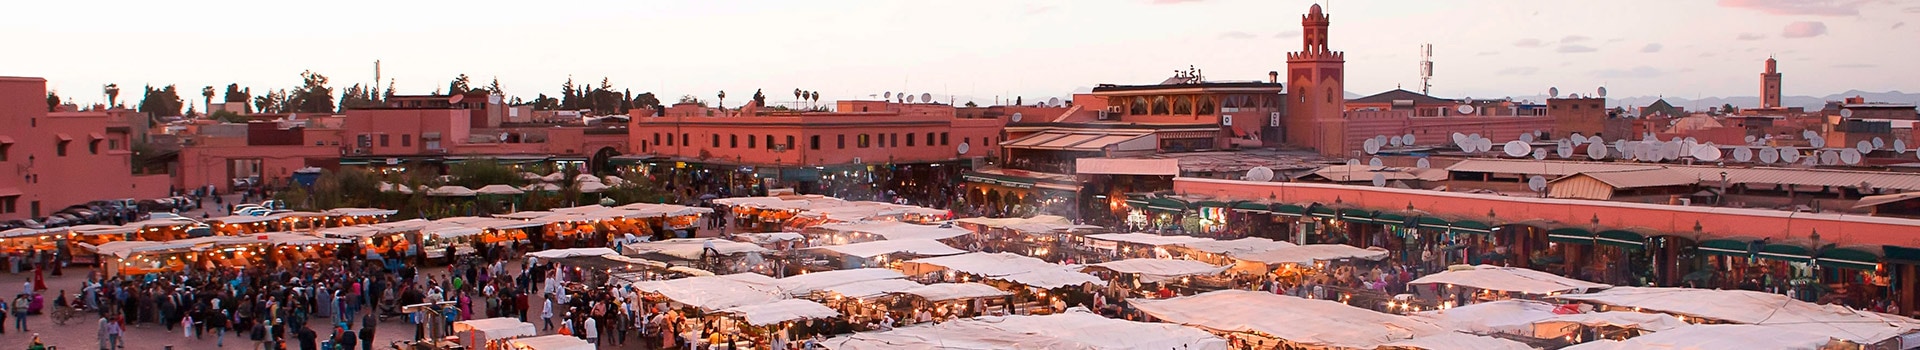 Alicante - Marrakech